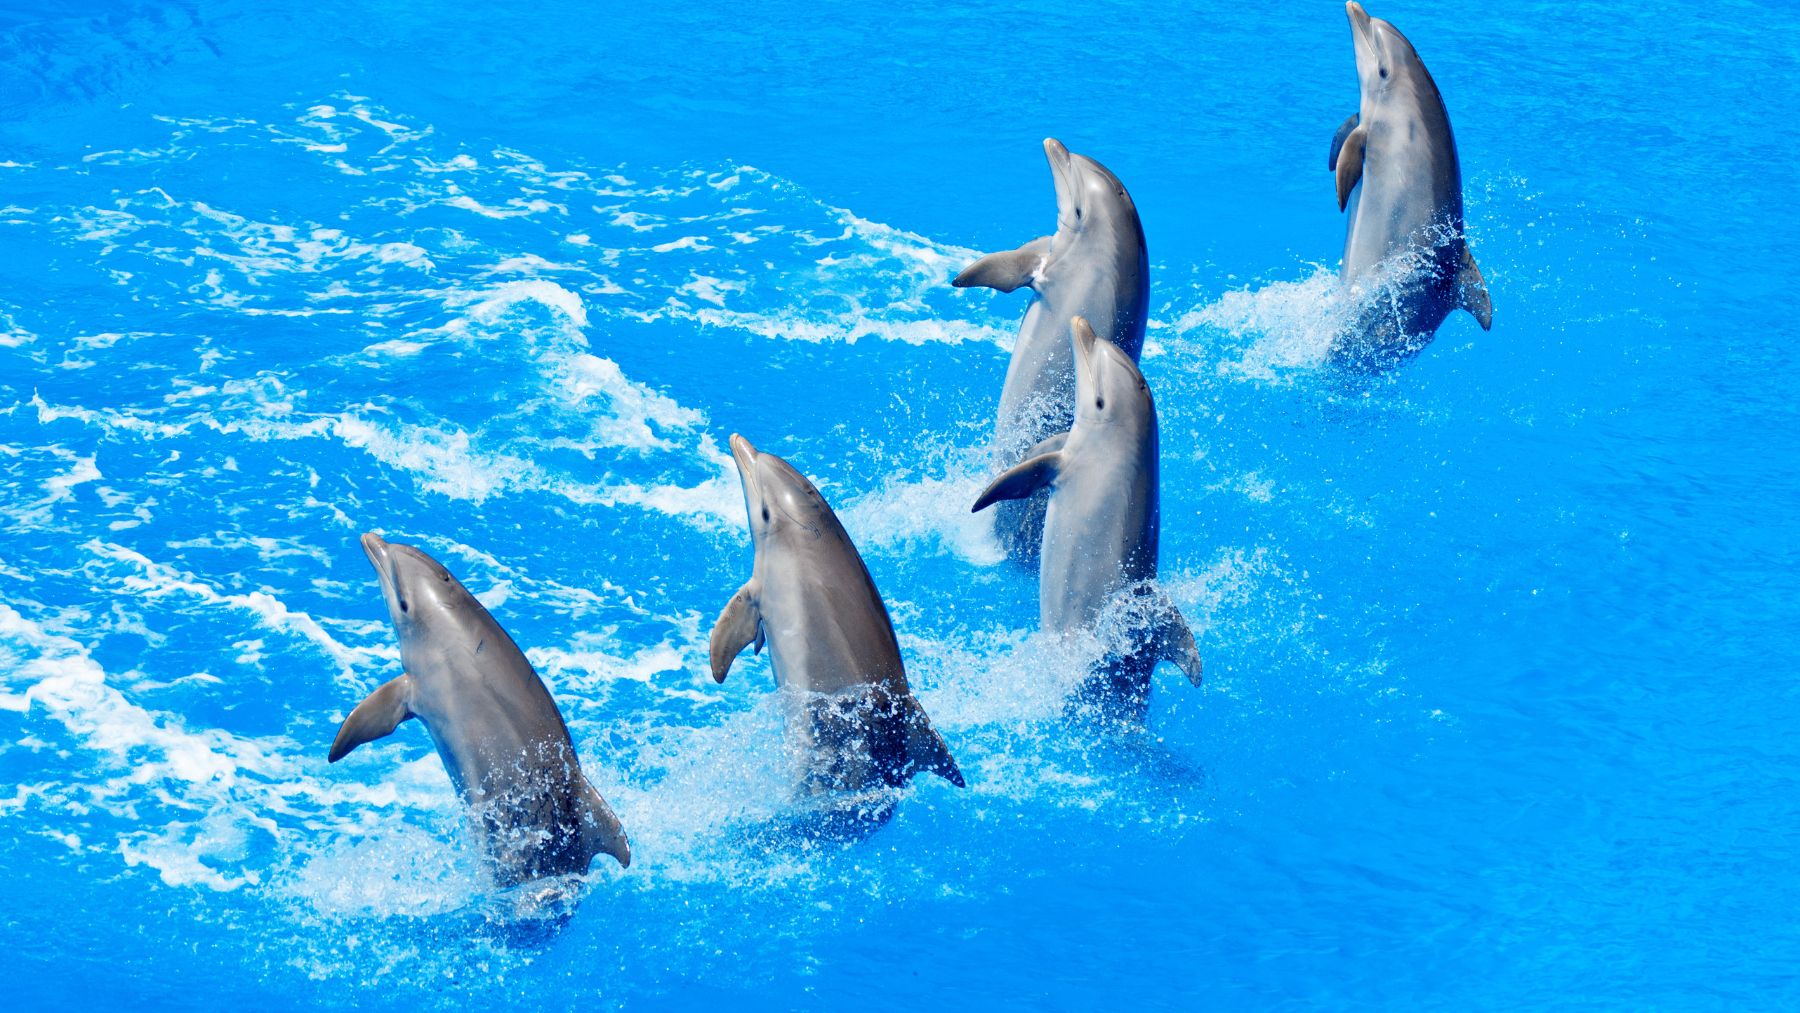 Dolphin Show in Tuan Chau